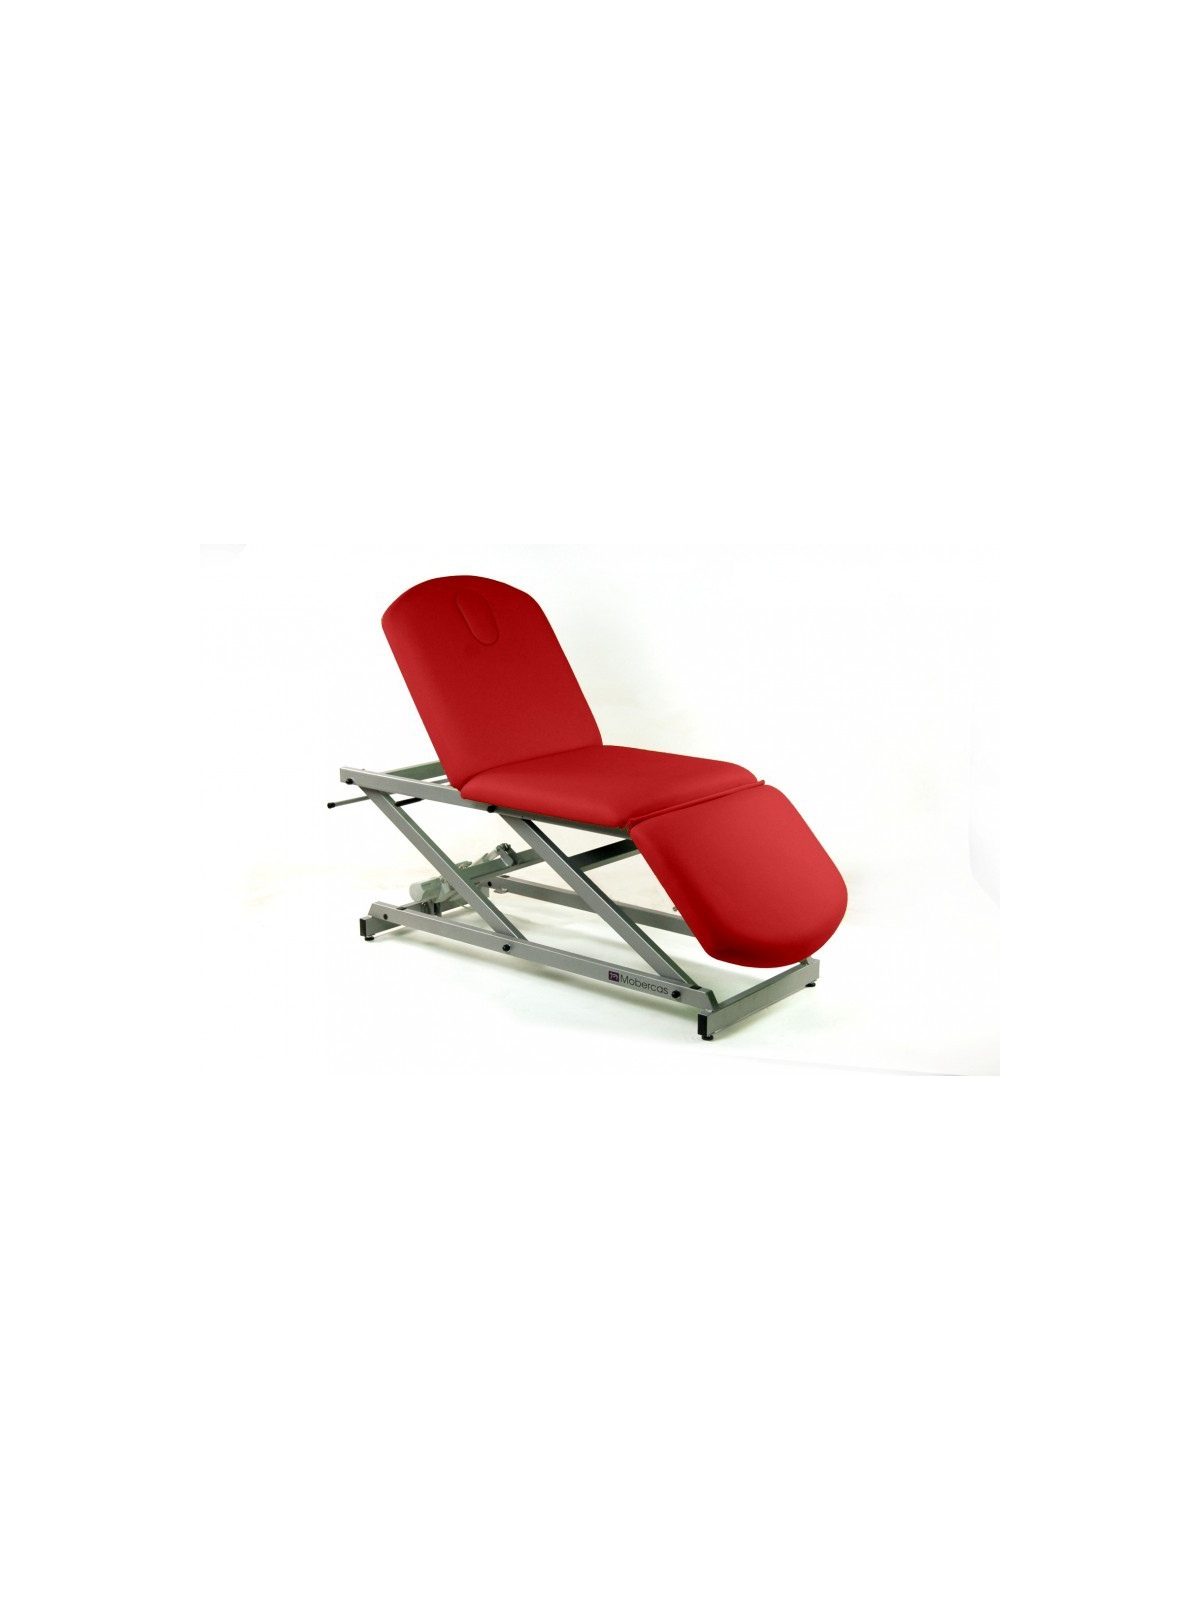 Camilla eléctrica de reconocimiento de 3 secciones tipo sillón con portarrollos y tapón facial.